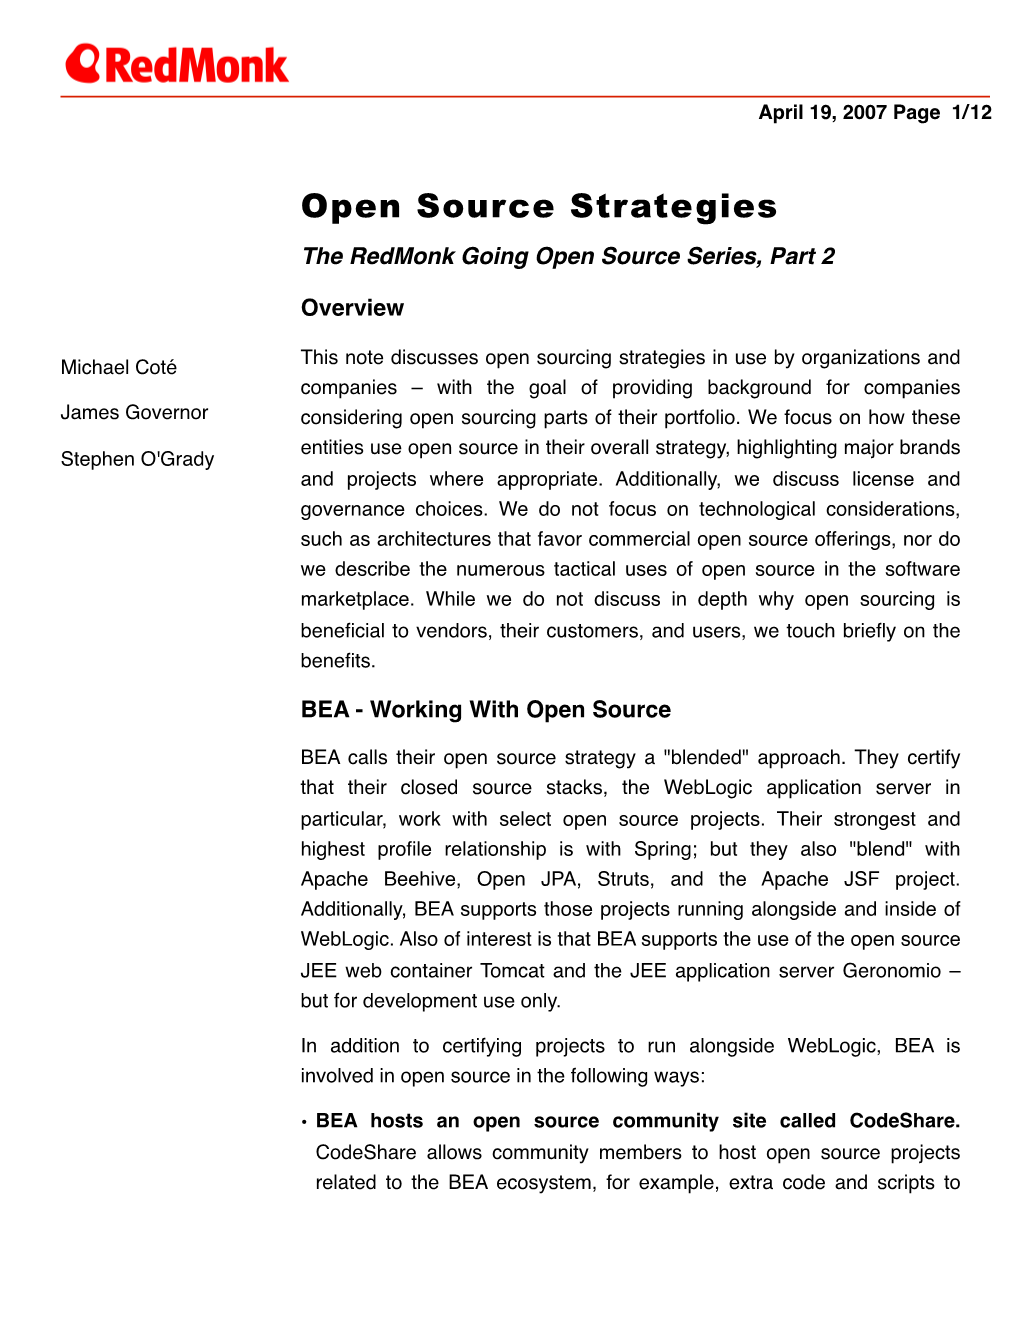 Open Source Strategies the Redmonk Going Open Source Series, Part 2